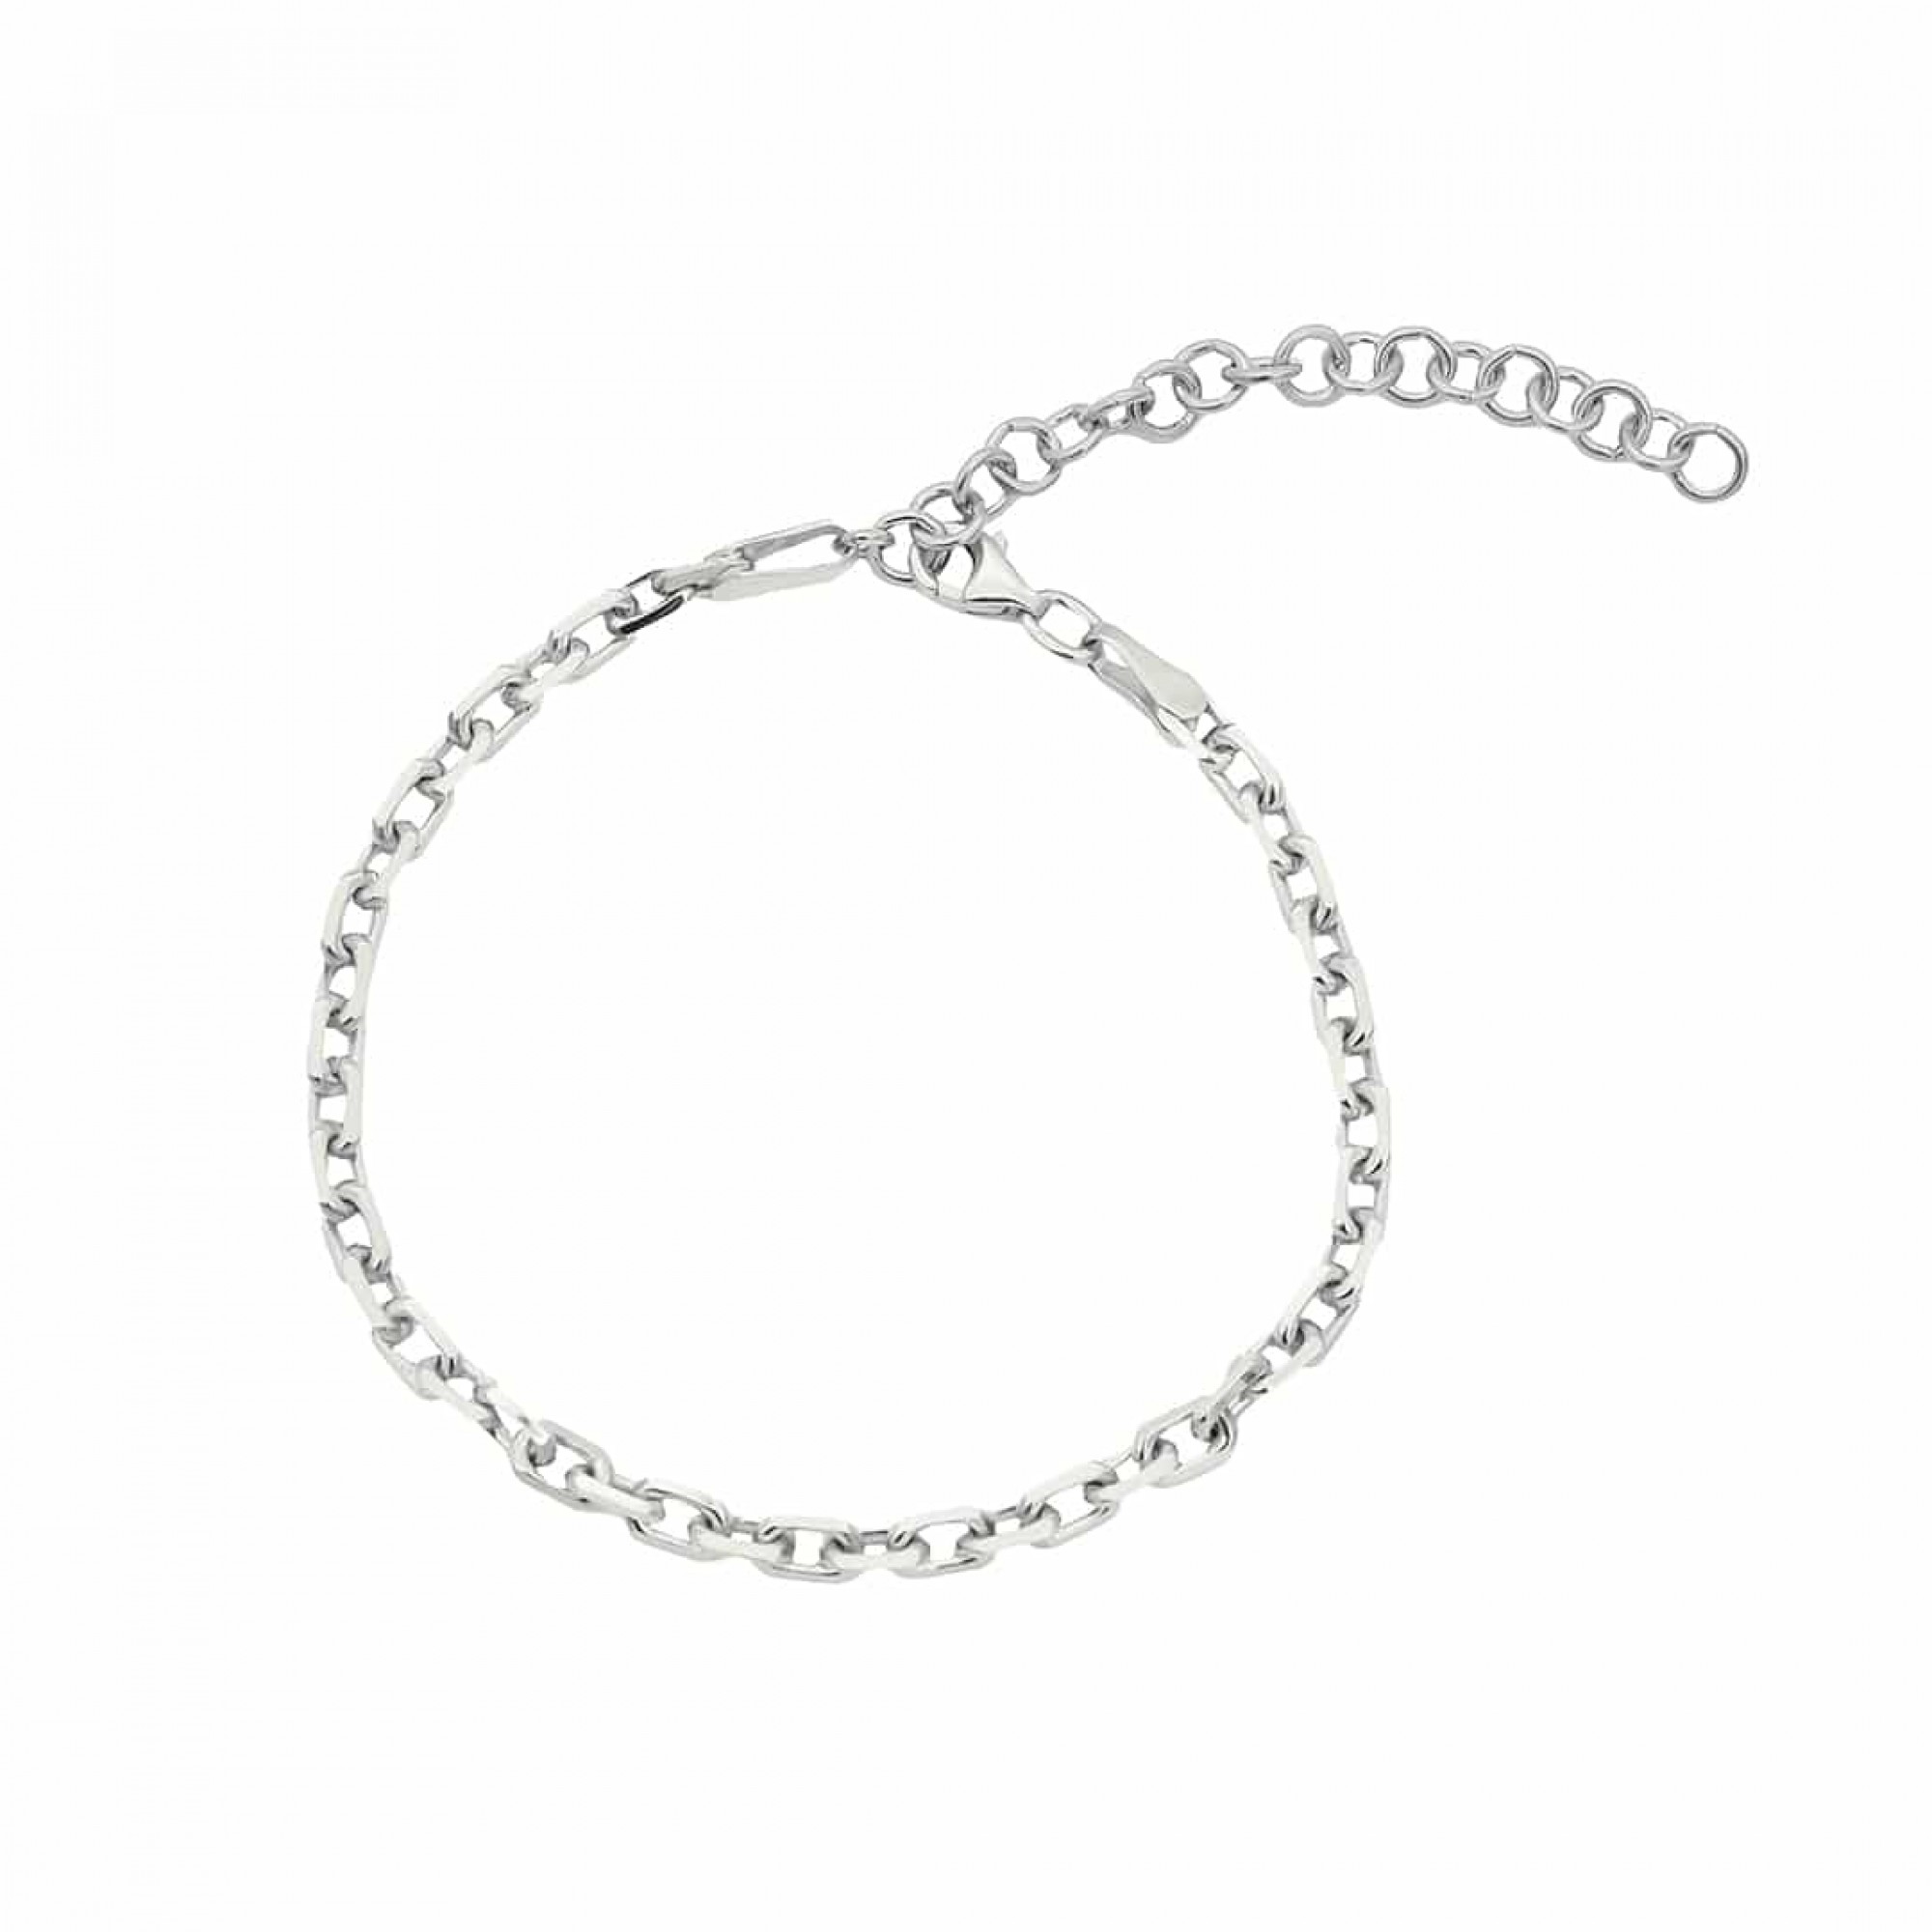 925 ideal als Geschenk oder in Armschmuck FashionJuwelier Gold - Silber Armkette/Armband Silber